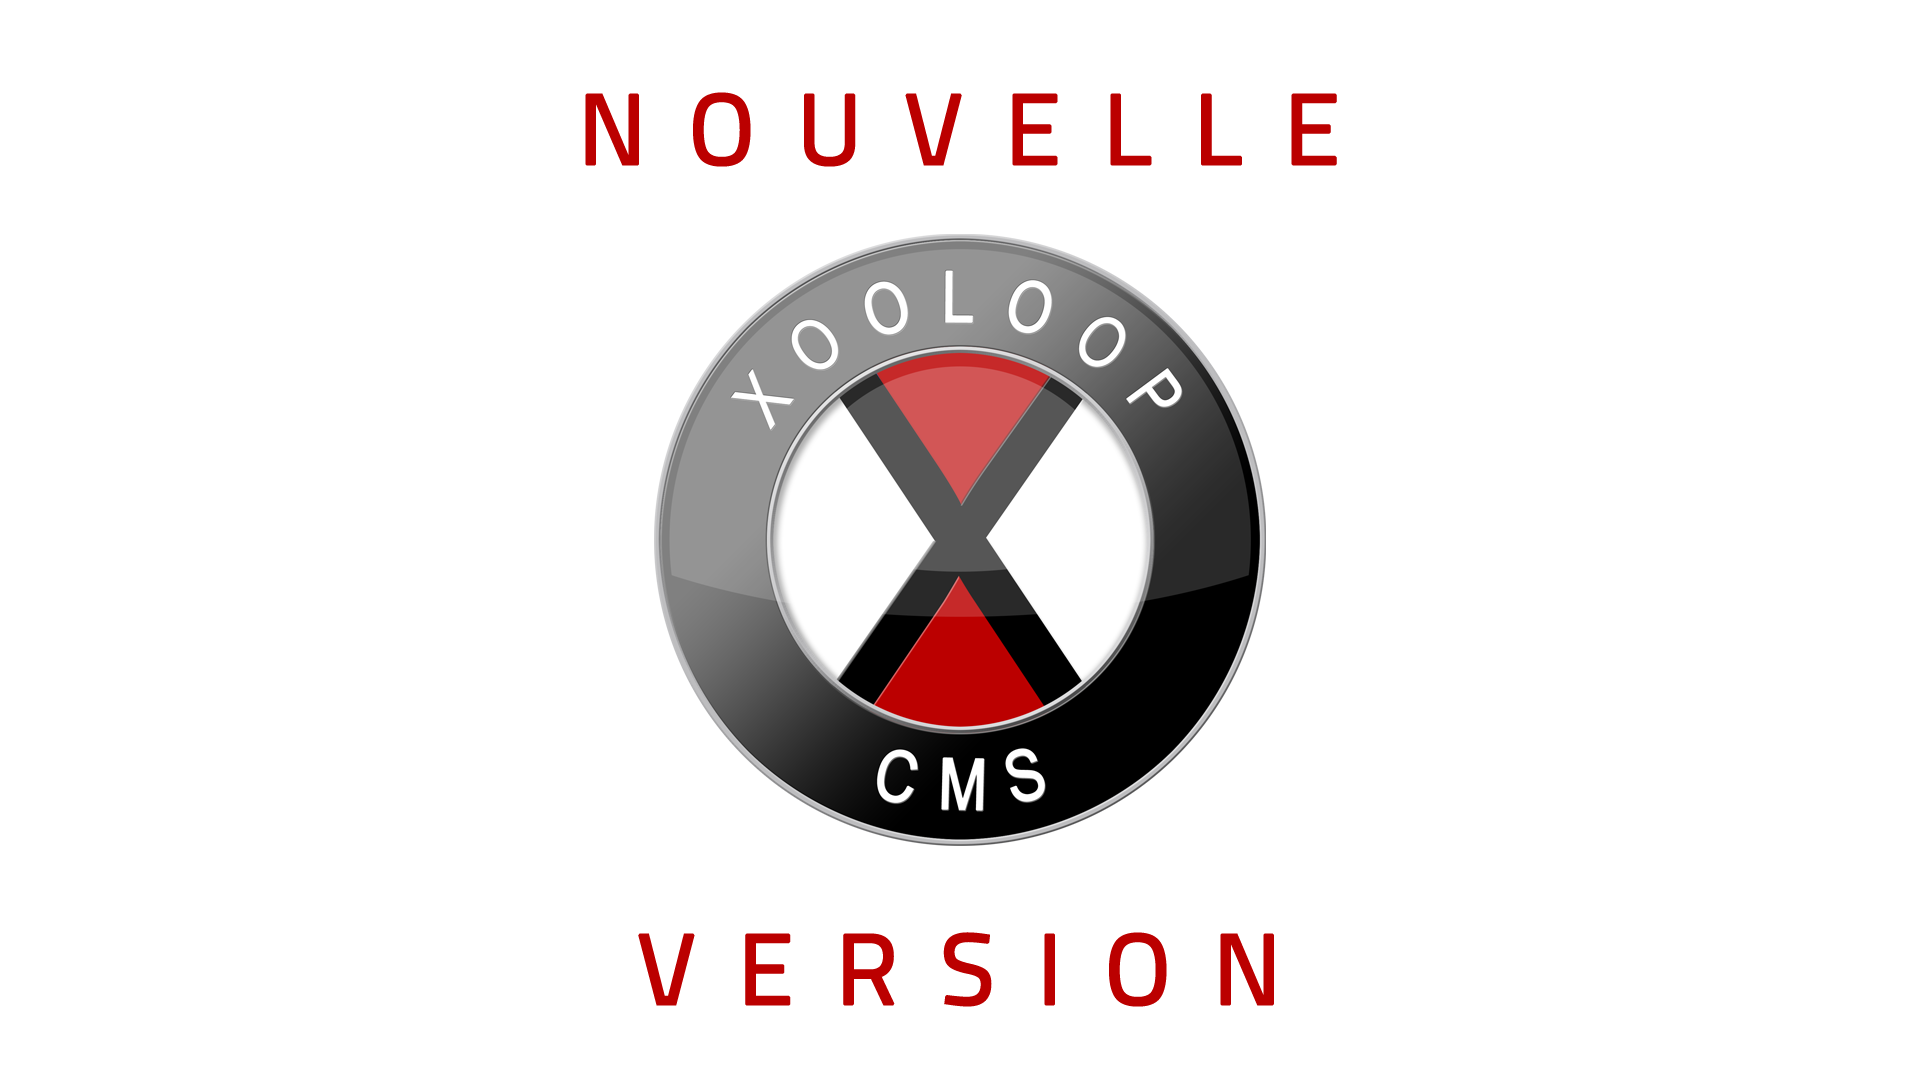 Nouvelle version de Xooloop CMS (v3.5.1)